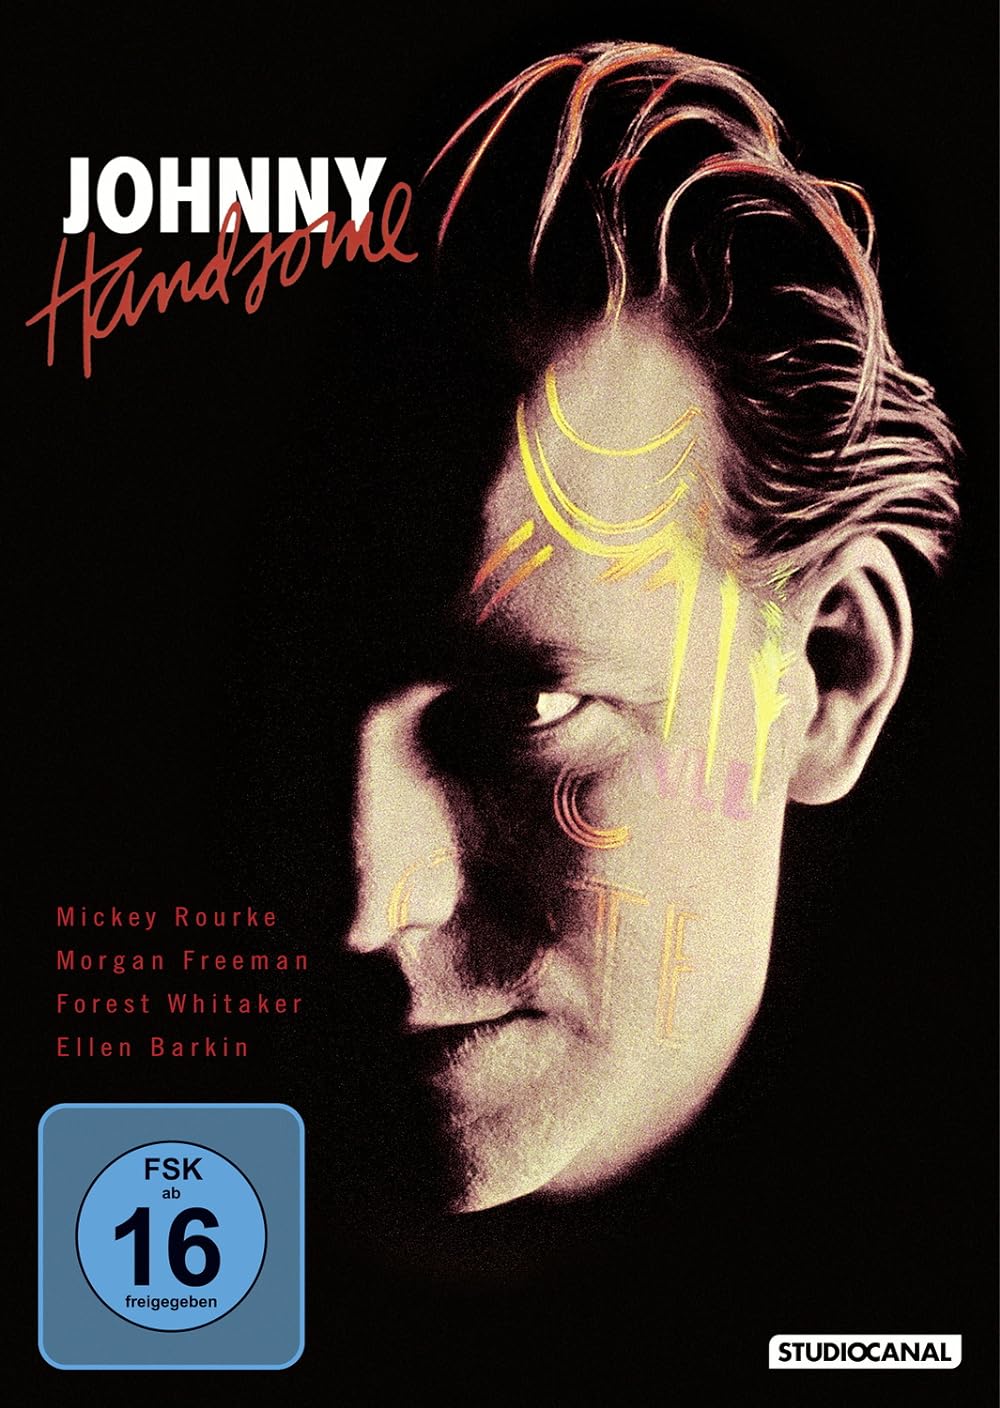 Johnny Handsome (1989) 192Kbps 23.976Fps 48Khz 2.0Ch Turkish Audio TAC